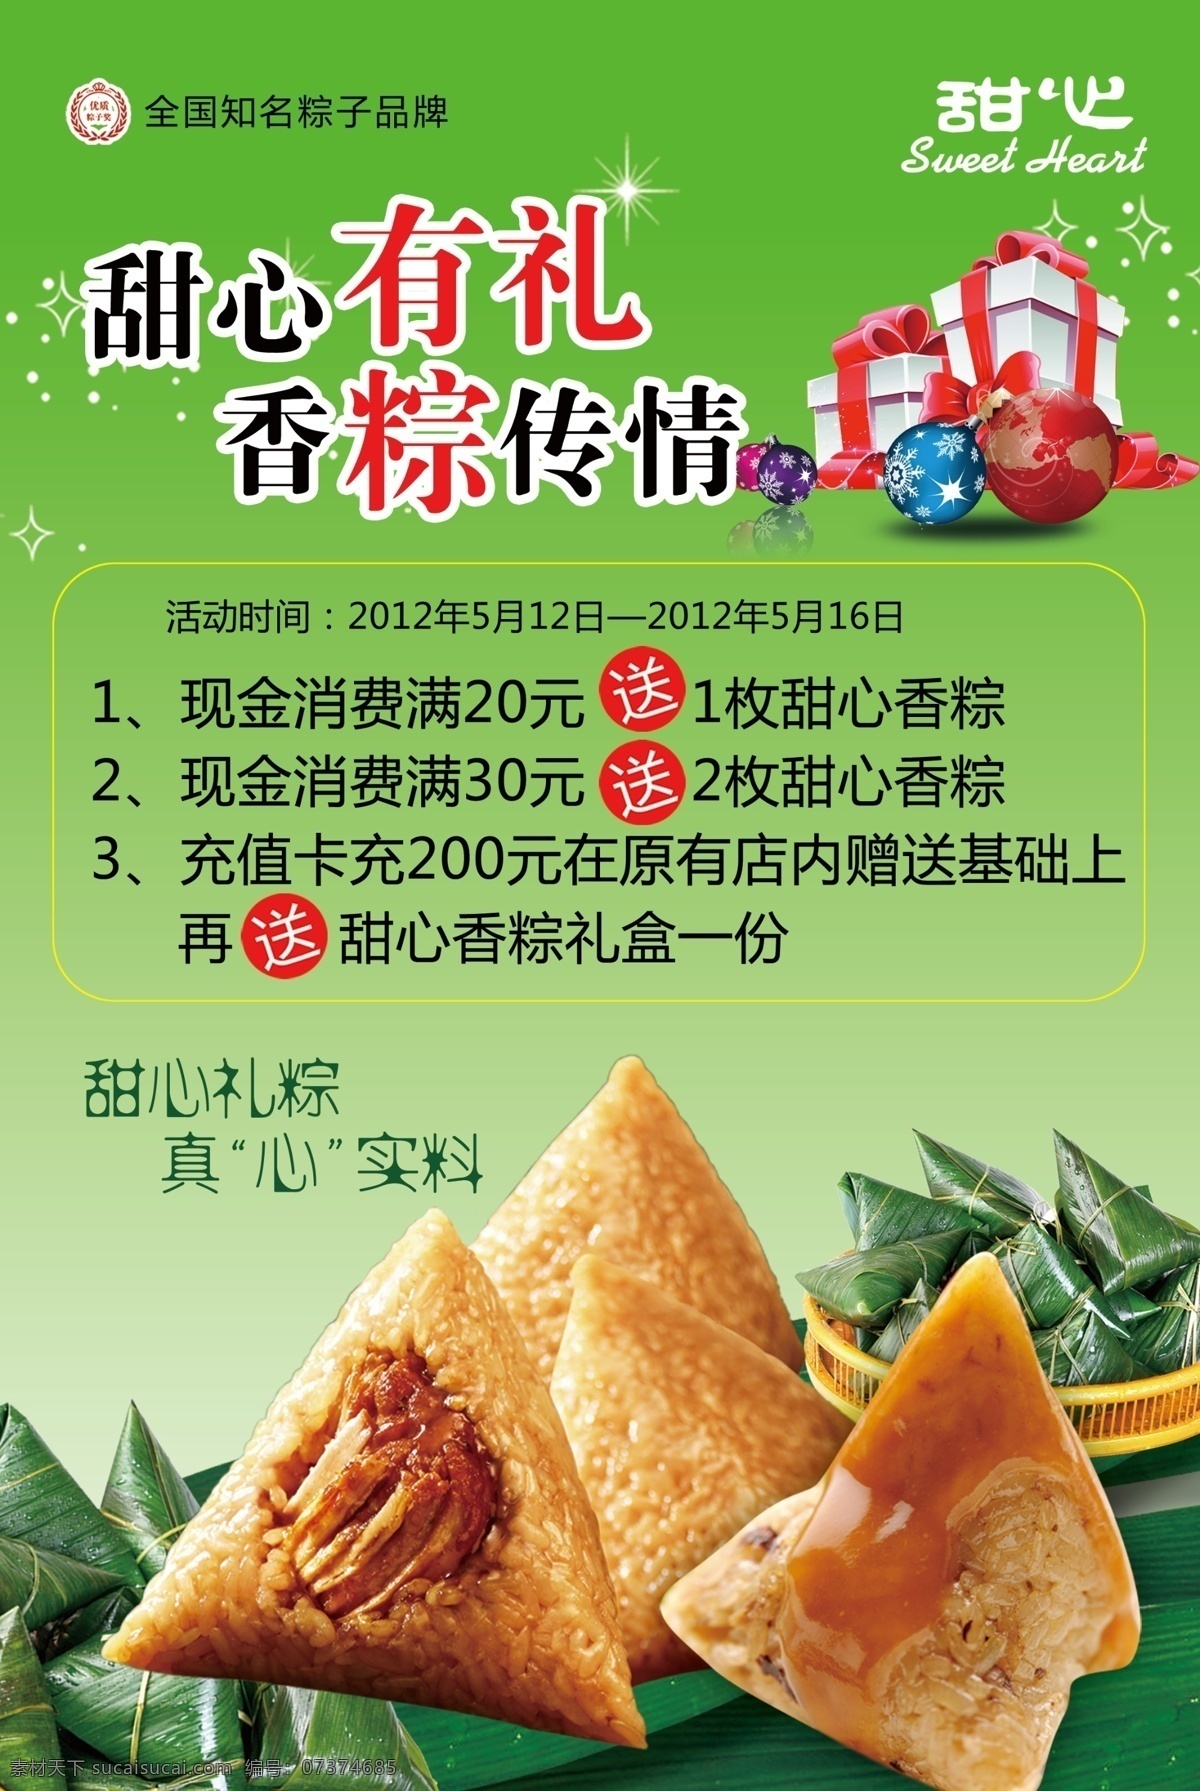 粽子海报 粽子上市 风味独特 粽子礼盒 广告设计模板 源文件